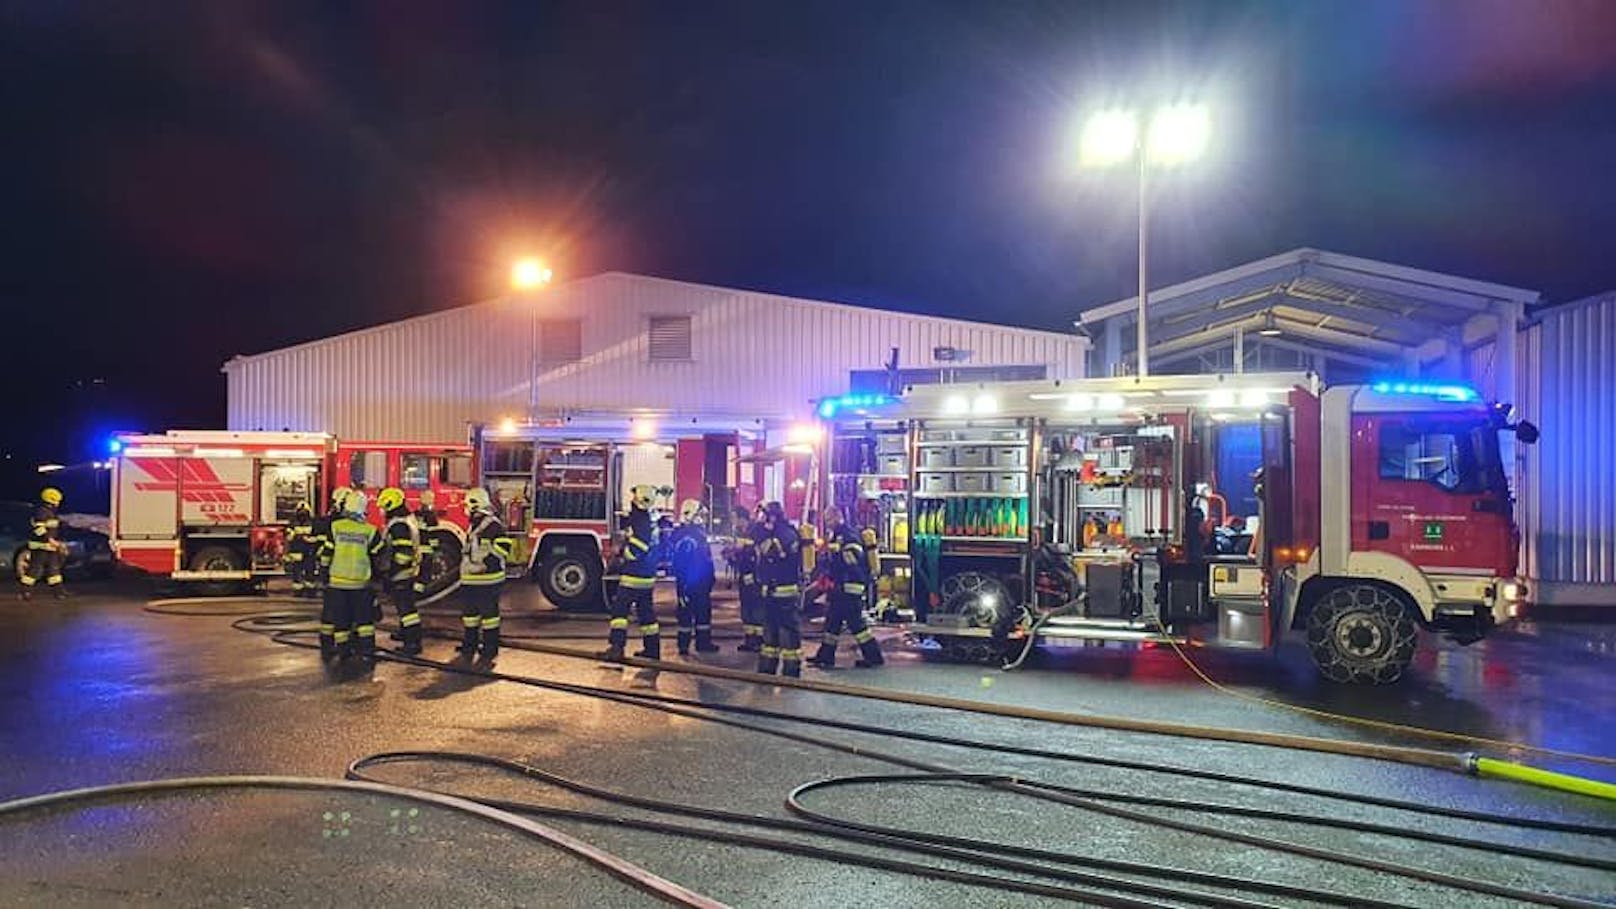 Bilder des Feuerwehreinsatzes in Kammern im Liesingtal am 6. Dezember 2020